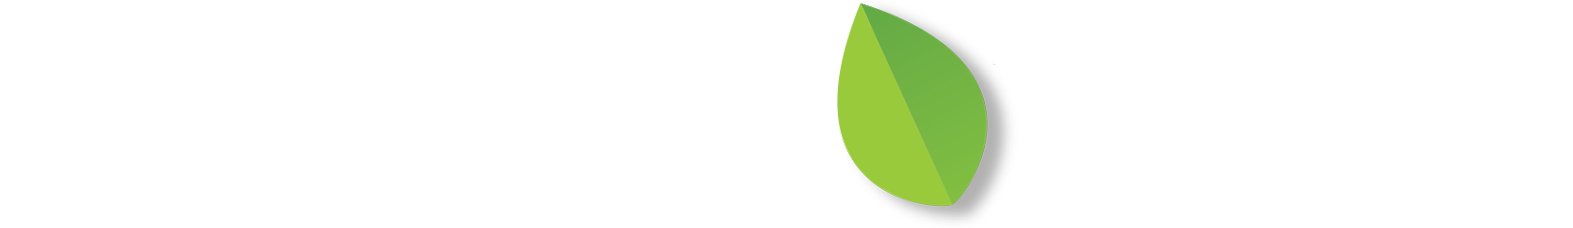 Career Tree Header Logo